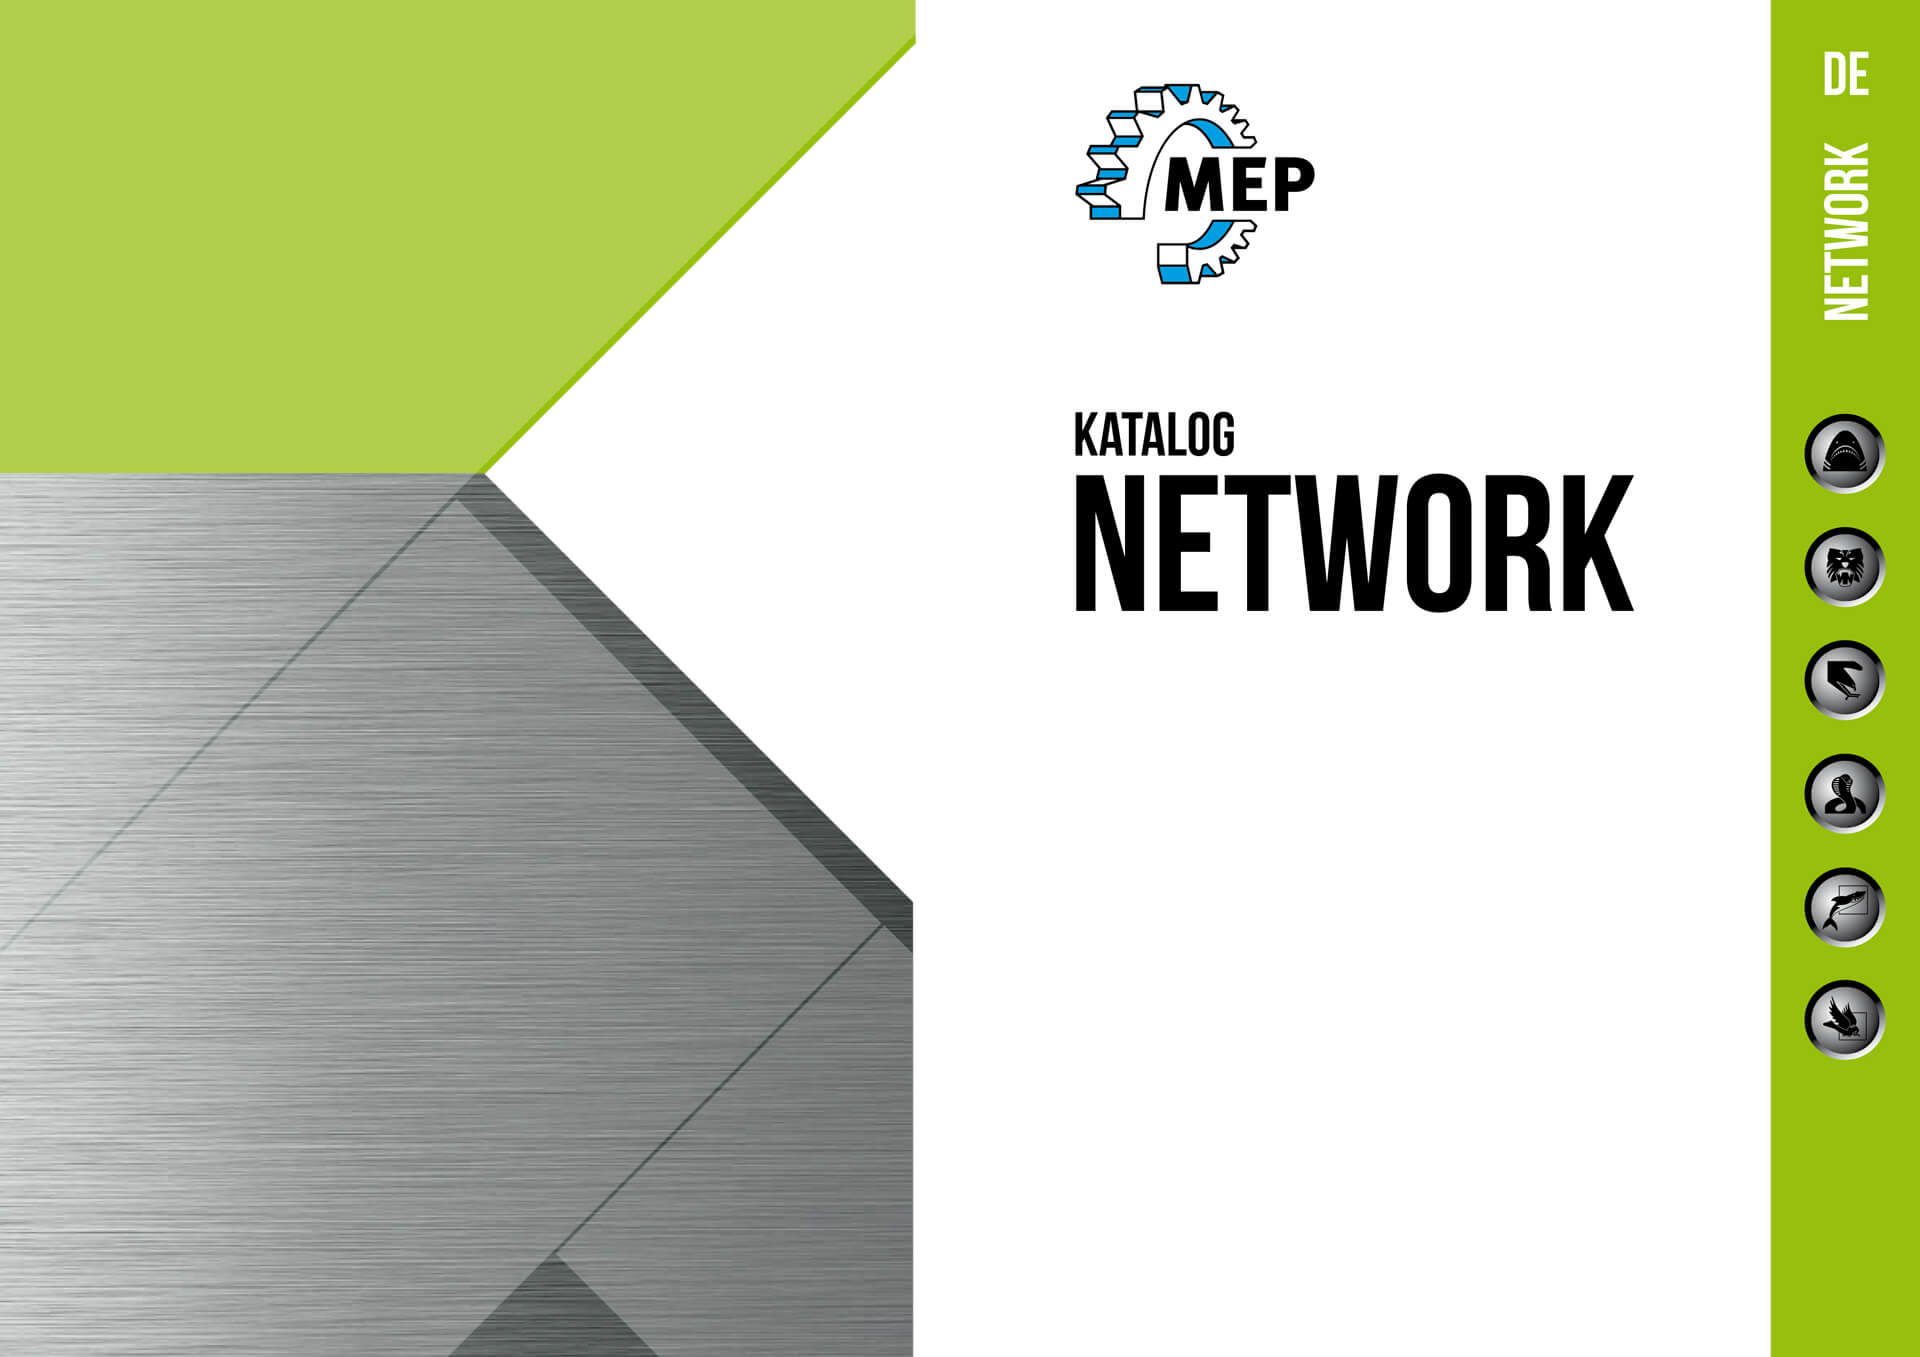 Kataloge - Metallsägen NETWORK Mep | © MEP S.p.A. Band- und Kreissägen zum Schneiden von Metallen